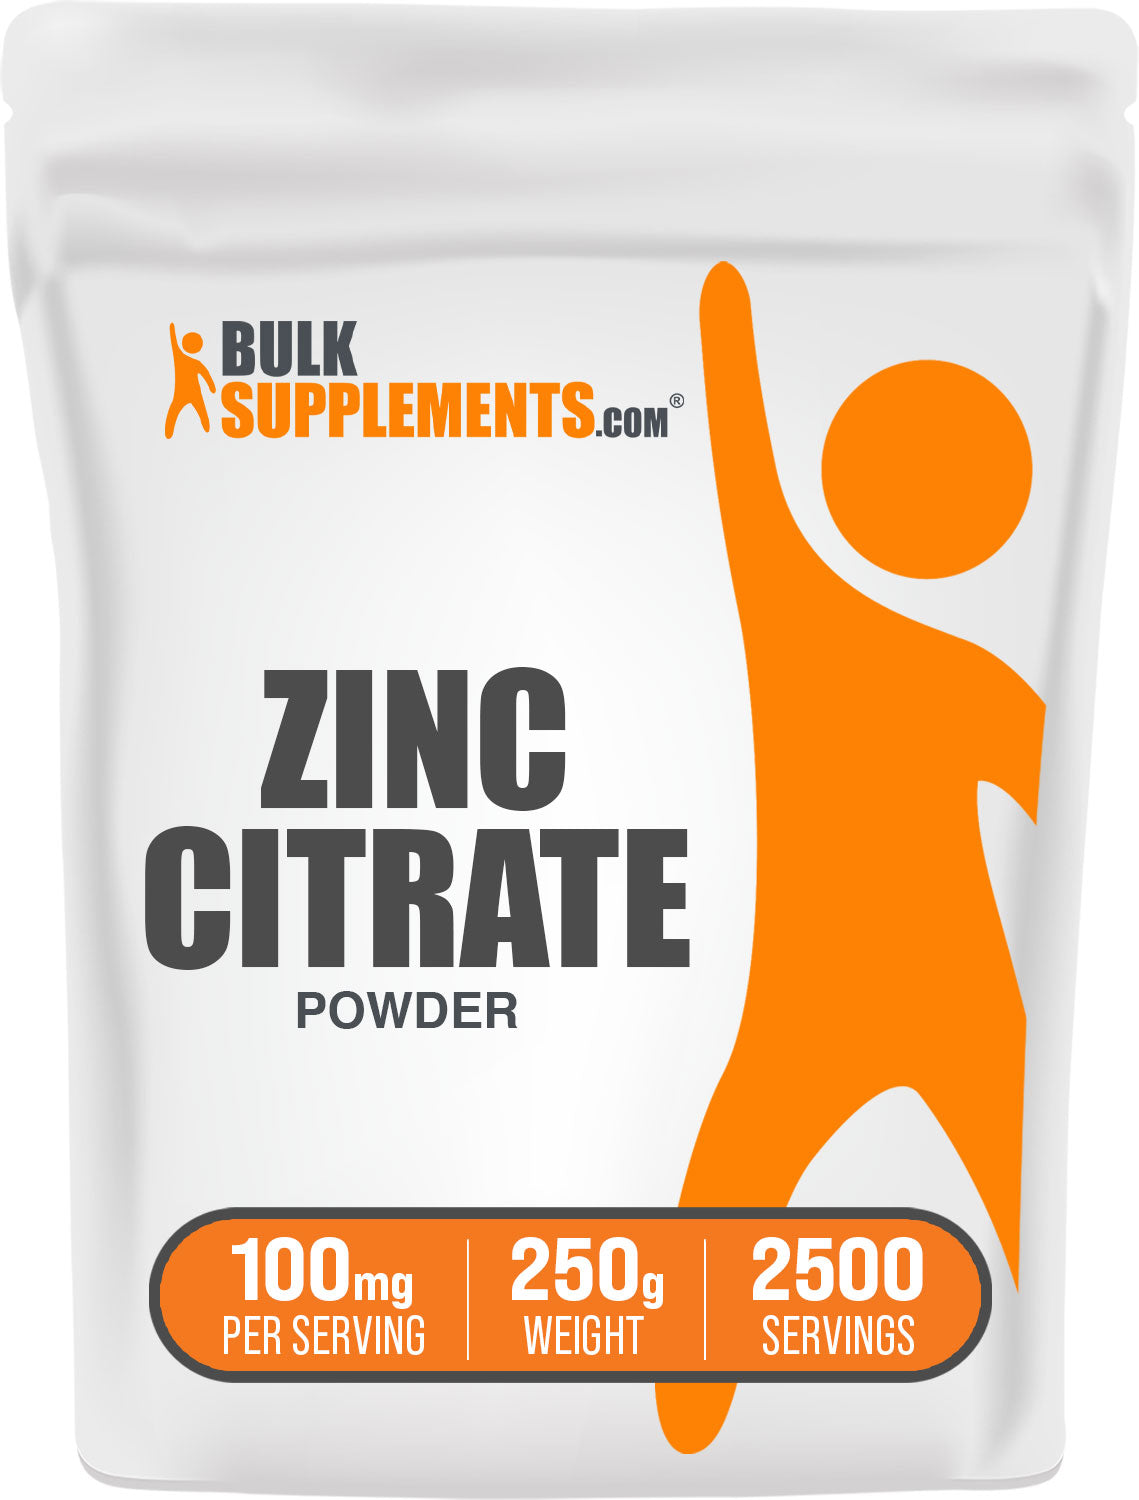 BulkSupplements.com Zinc Citrate Powder 250g bag